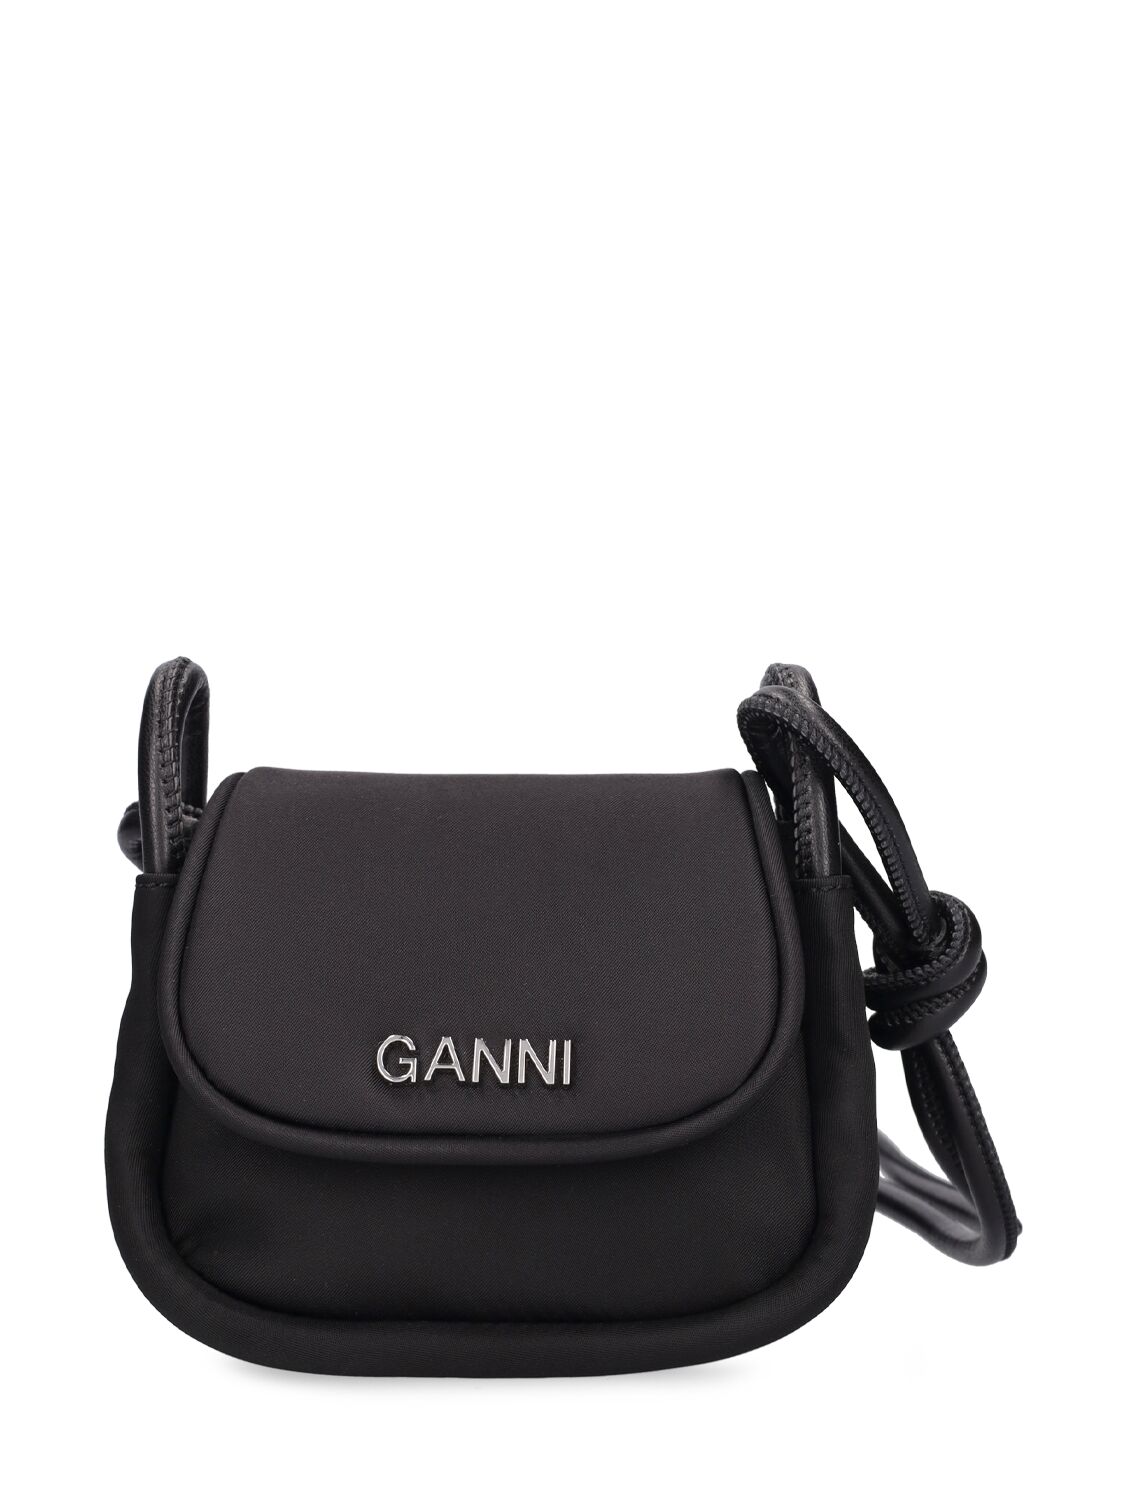 Ganni Knot Mini Shoulder Bag In Black